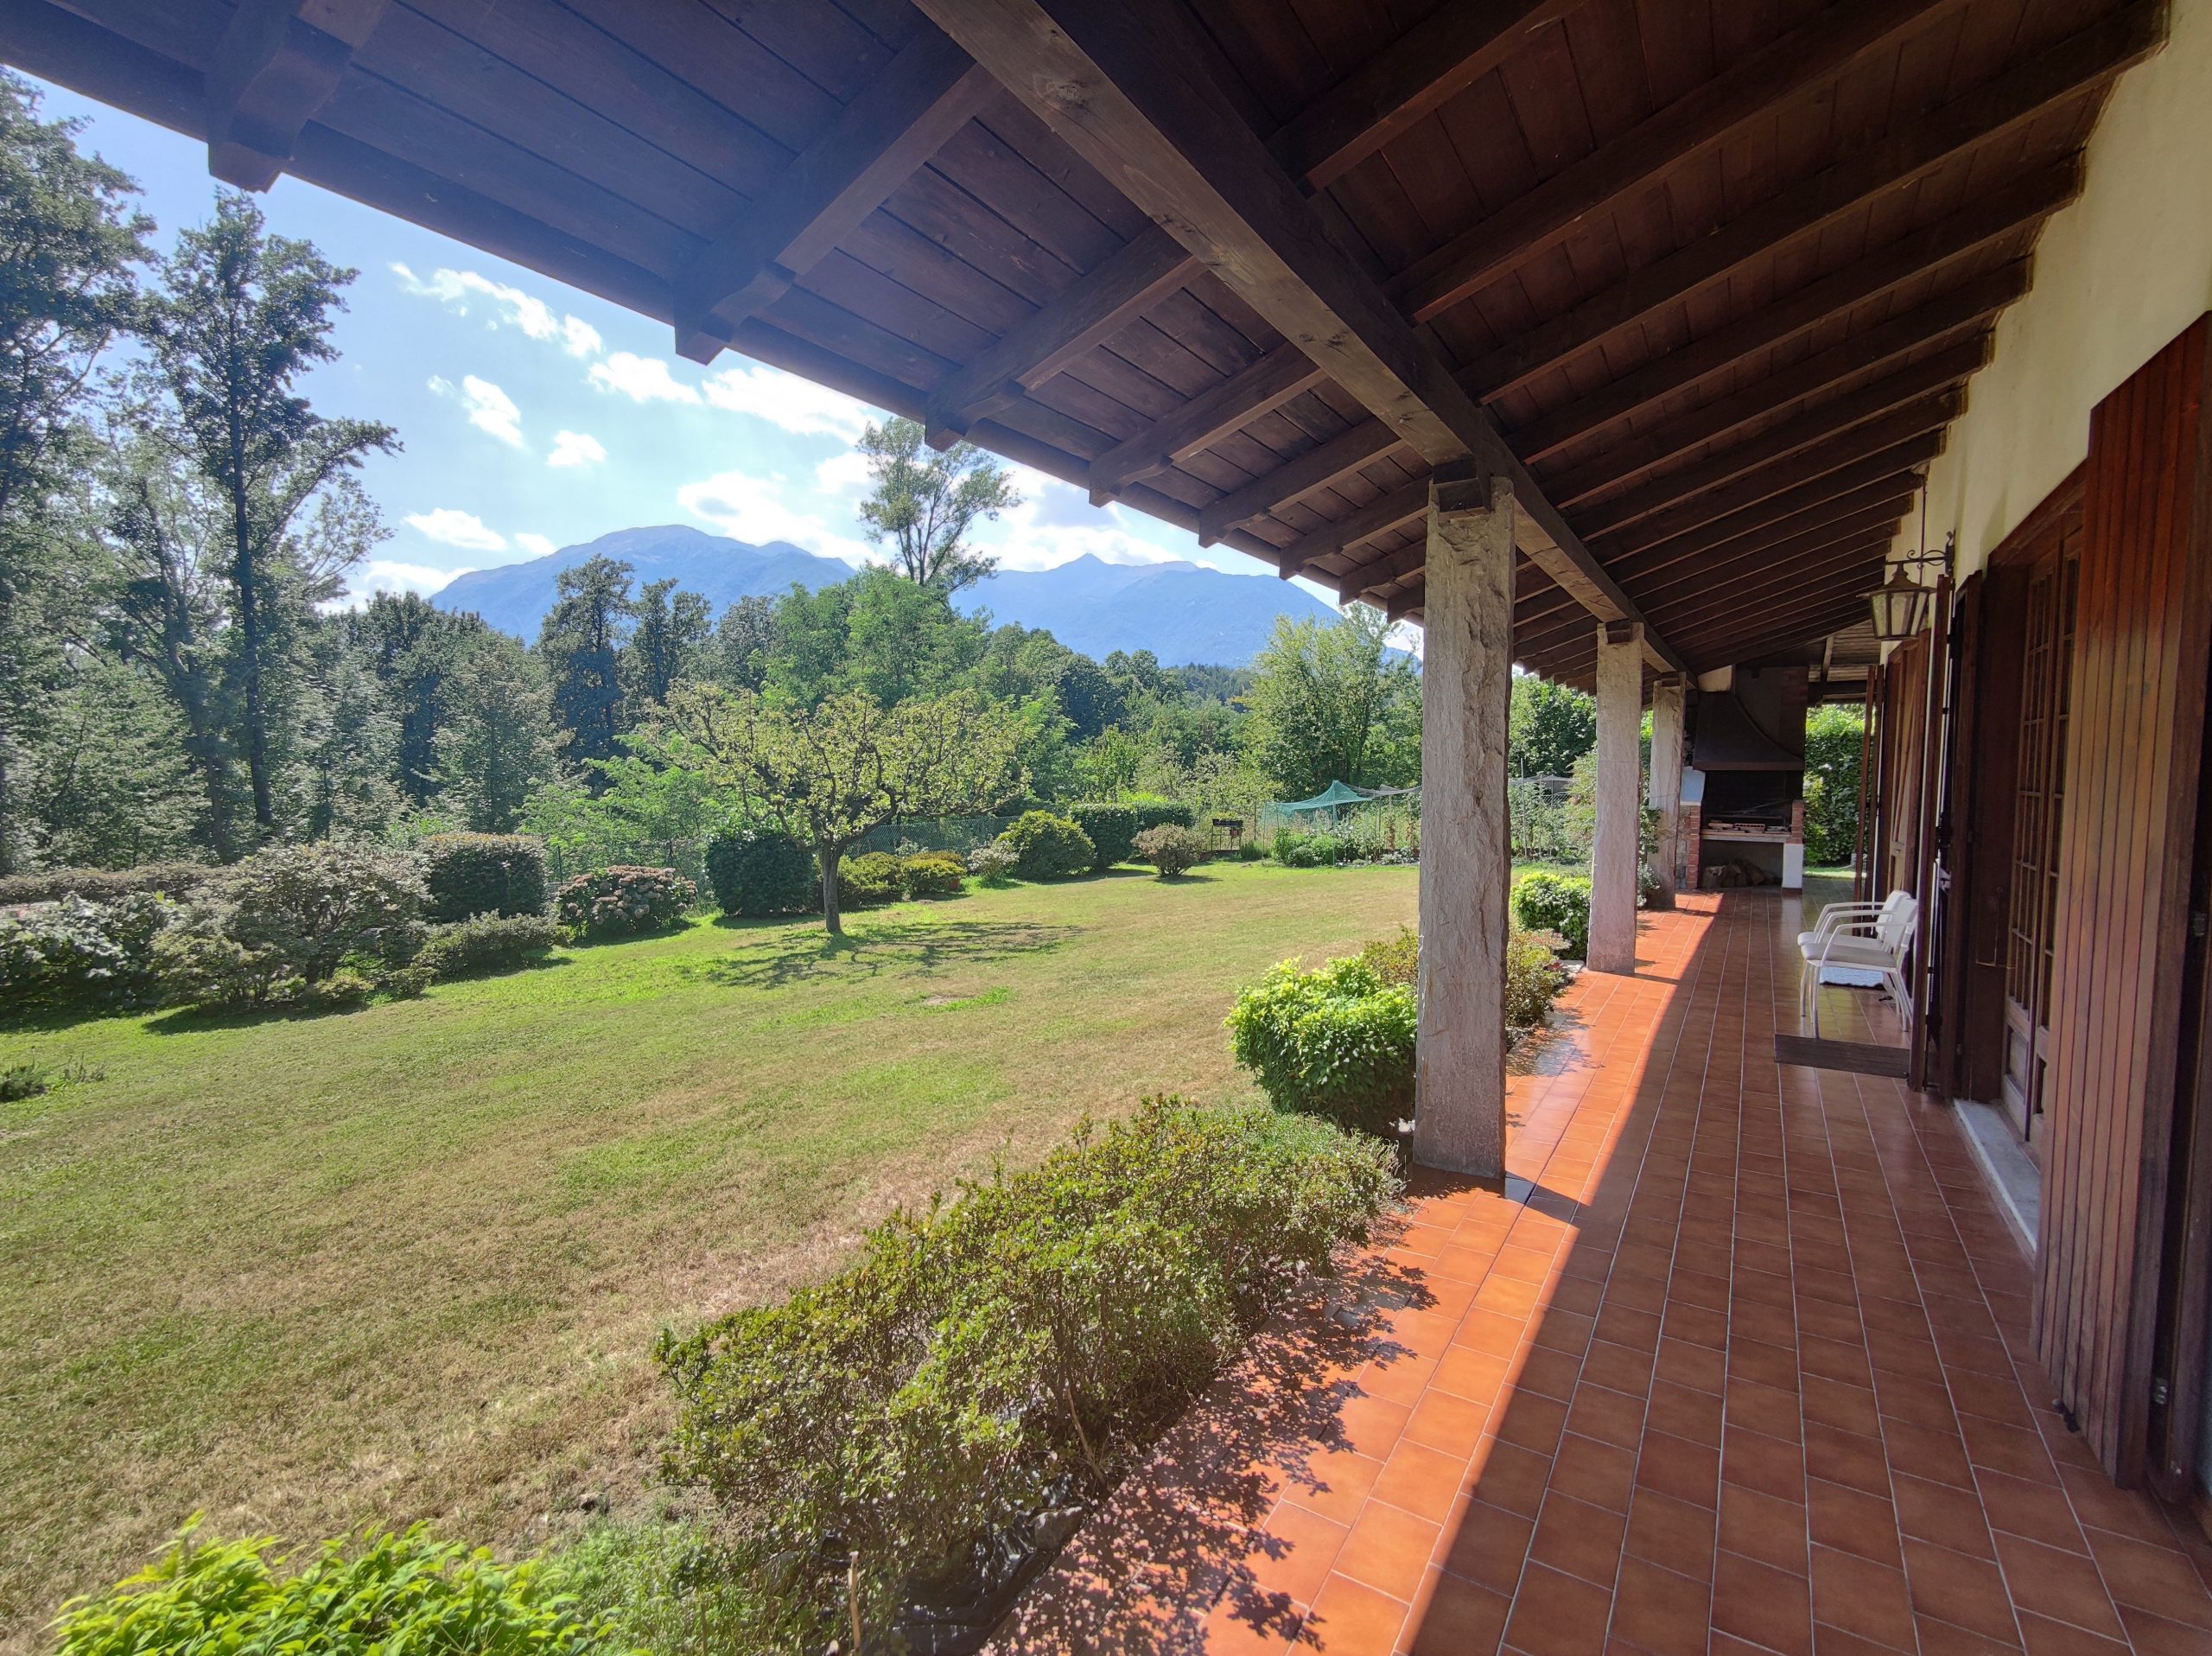 Foto Villa singola con ampio giardino, Mergozzo